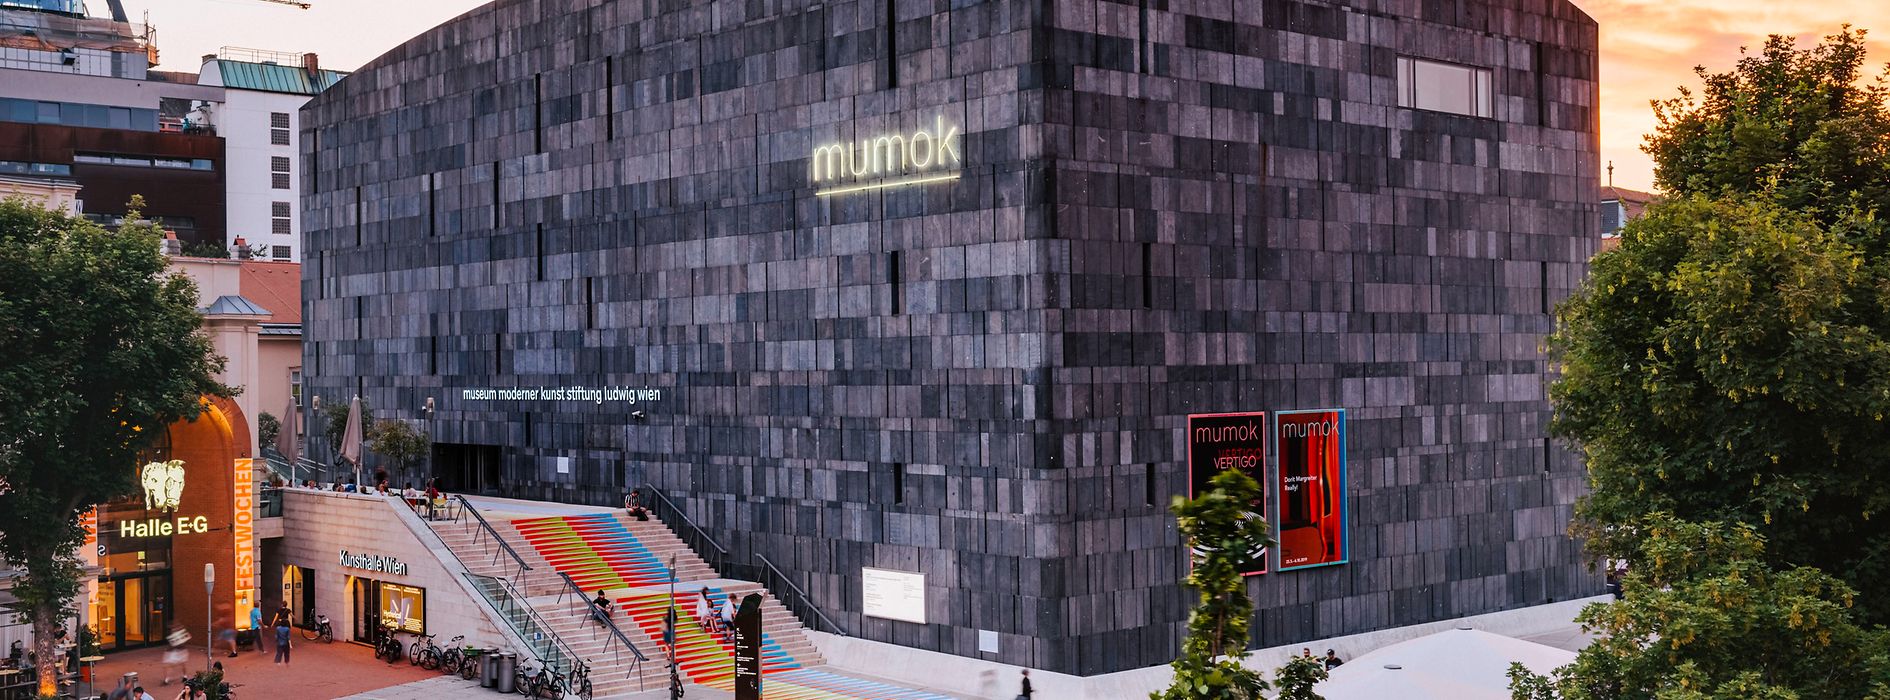 mumok – Muzeum Sztuki Współczesnej, widok z zewnątrz, dzielnica muzealna 